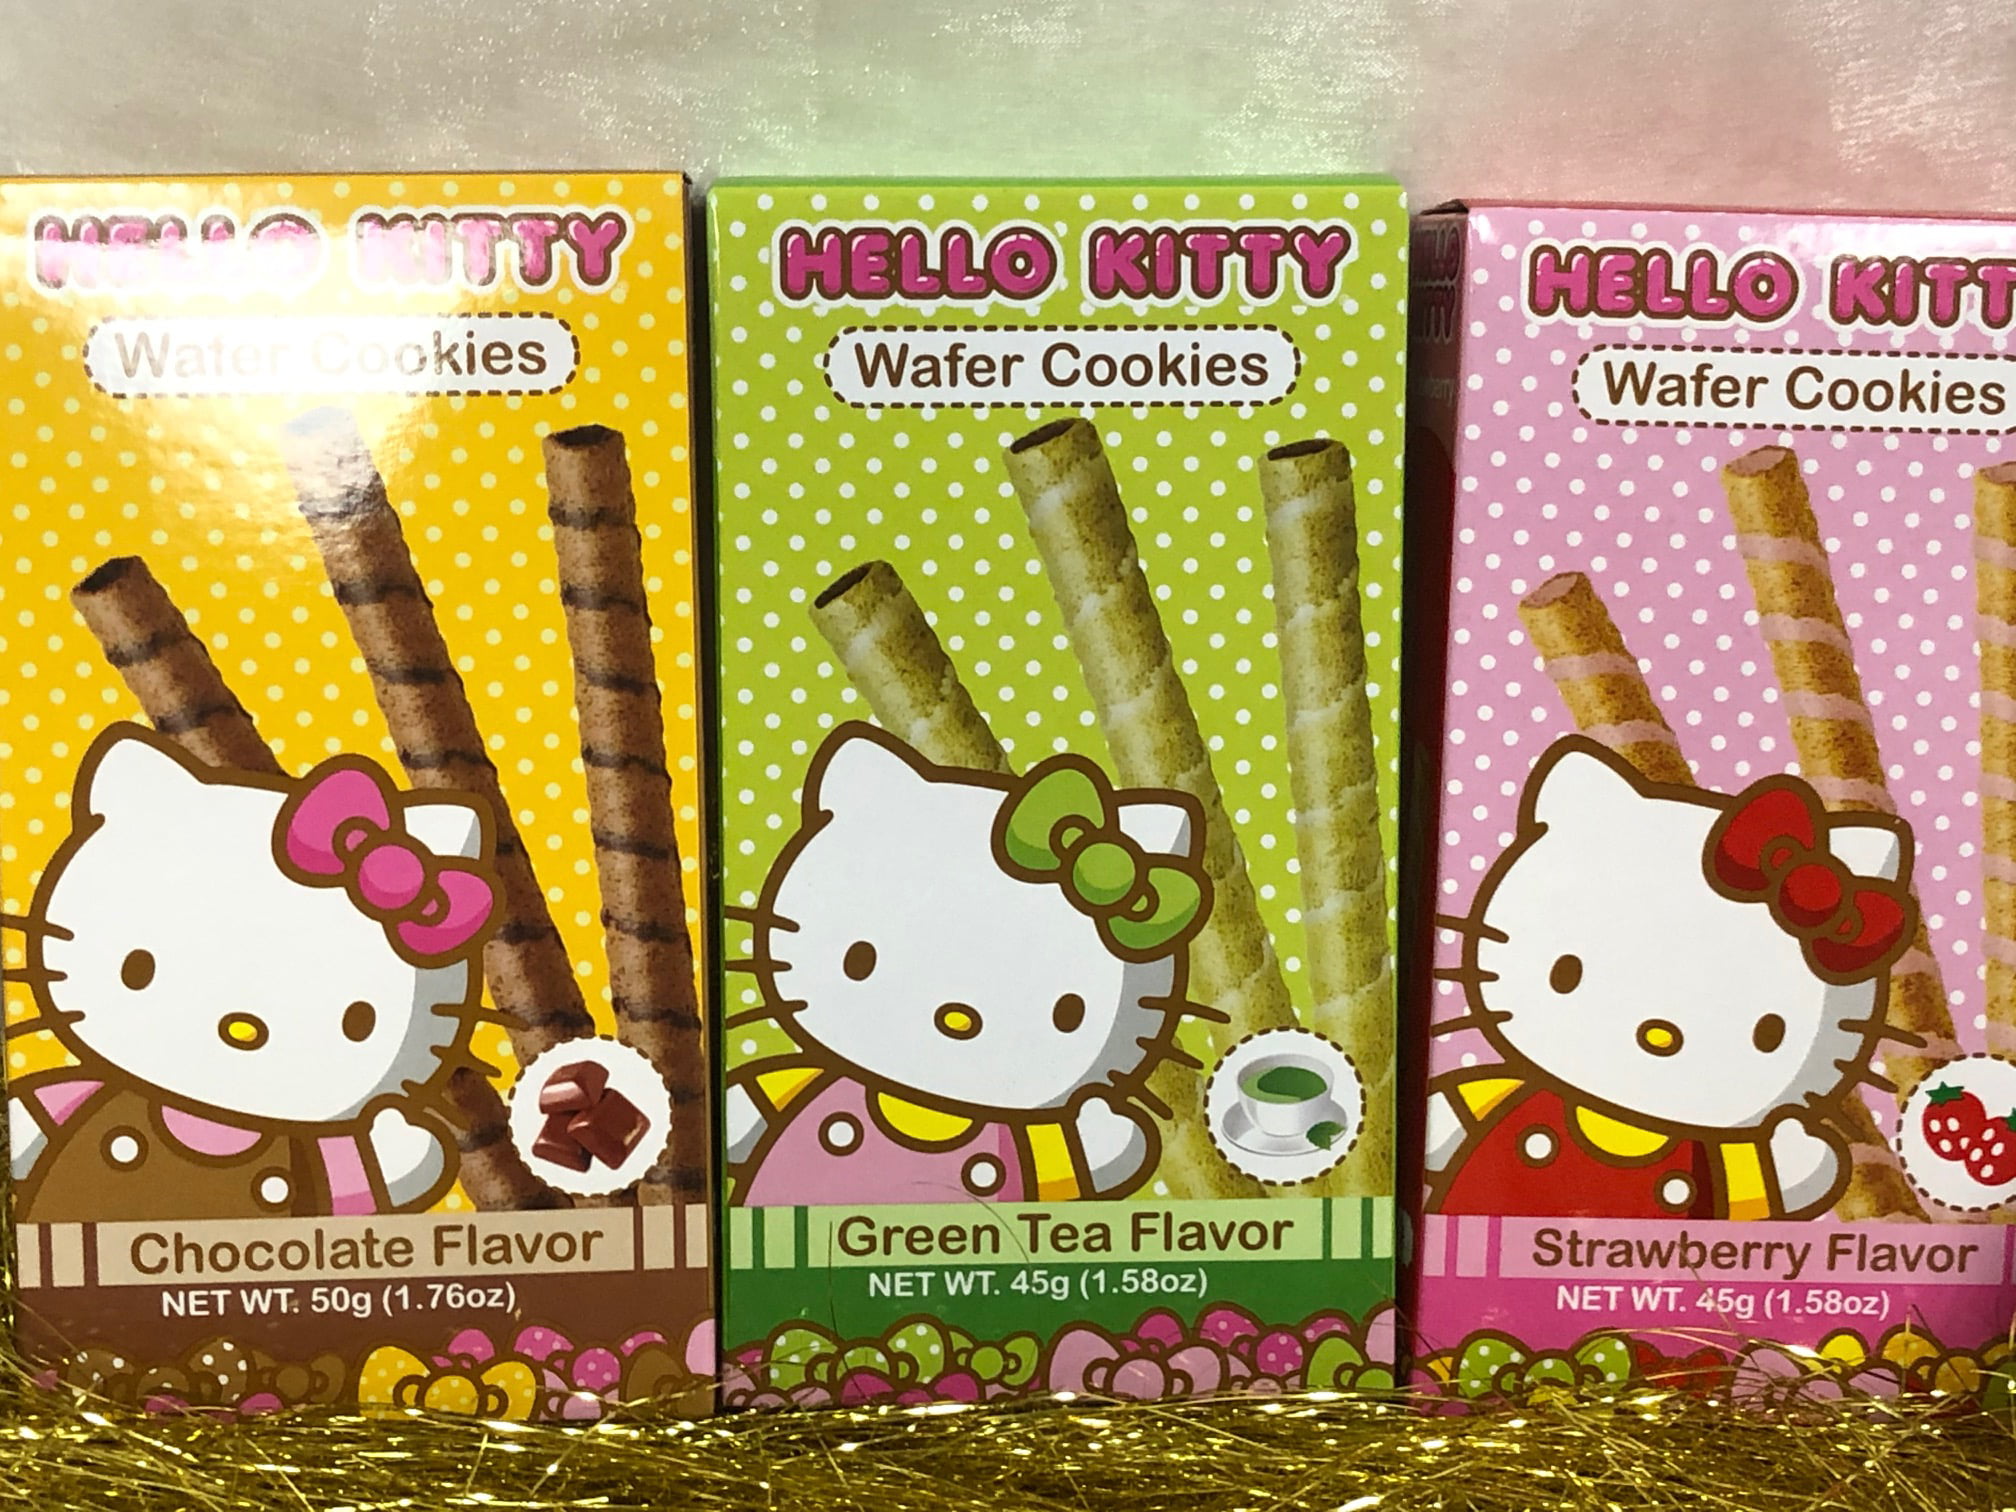 Hello Kitty Knives Set – SNACKS GO